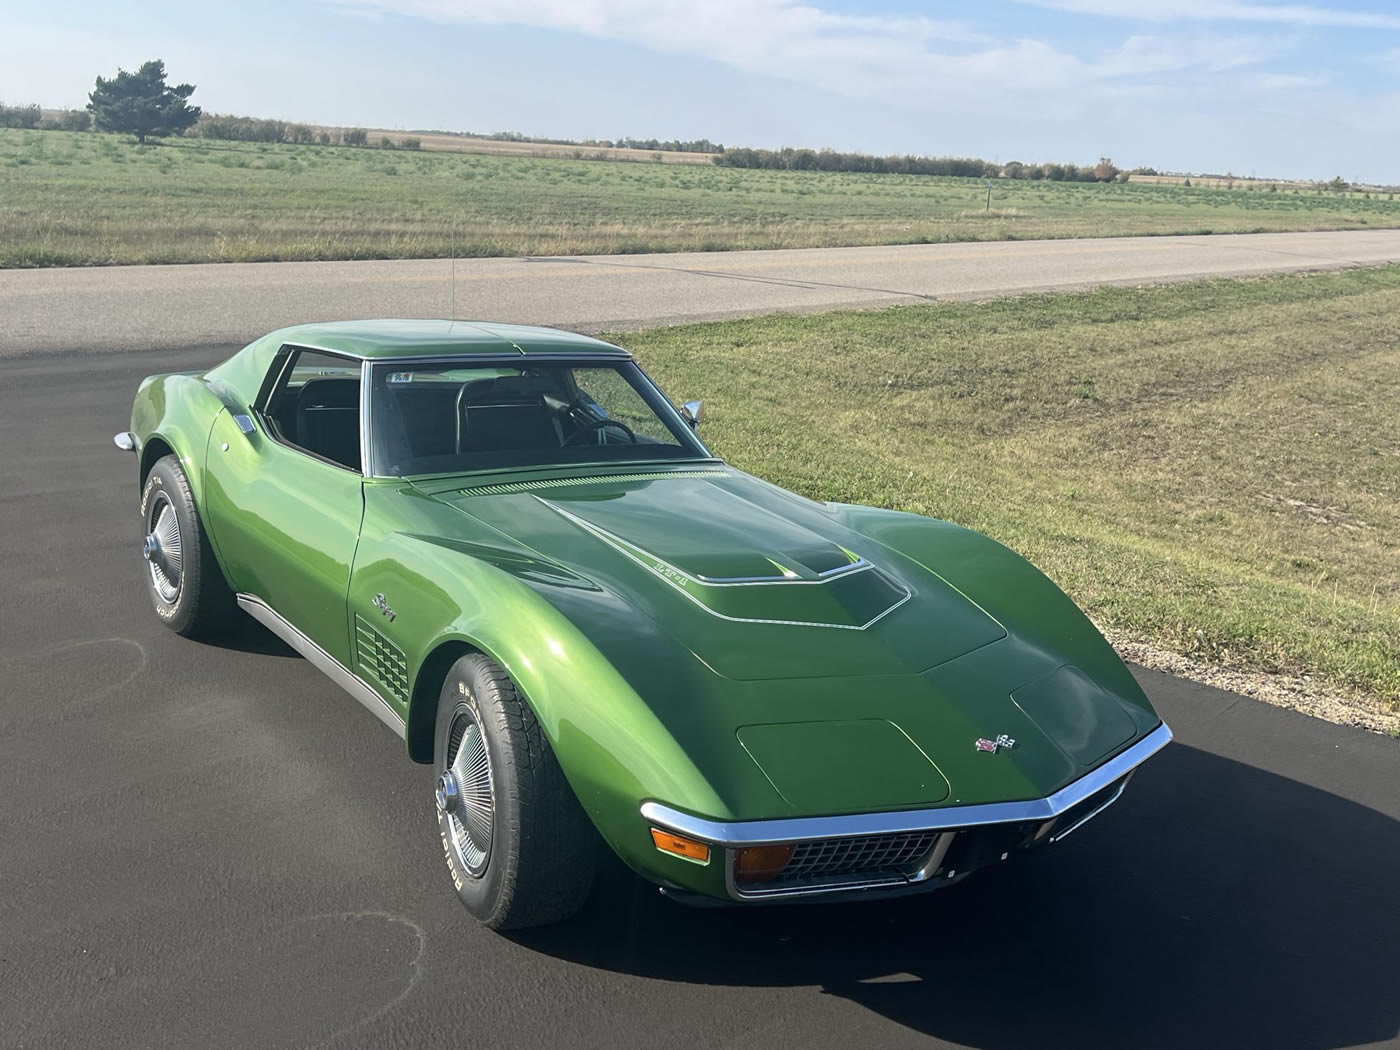 1972 Corvette LT-1 Coupe in Elkhart Green